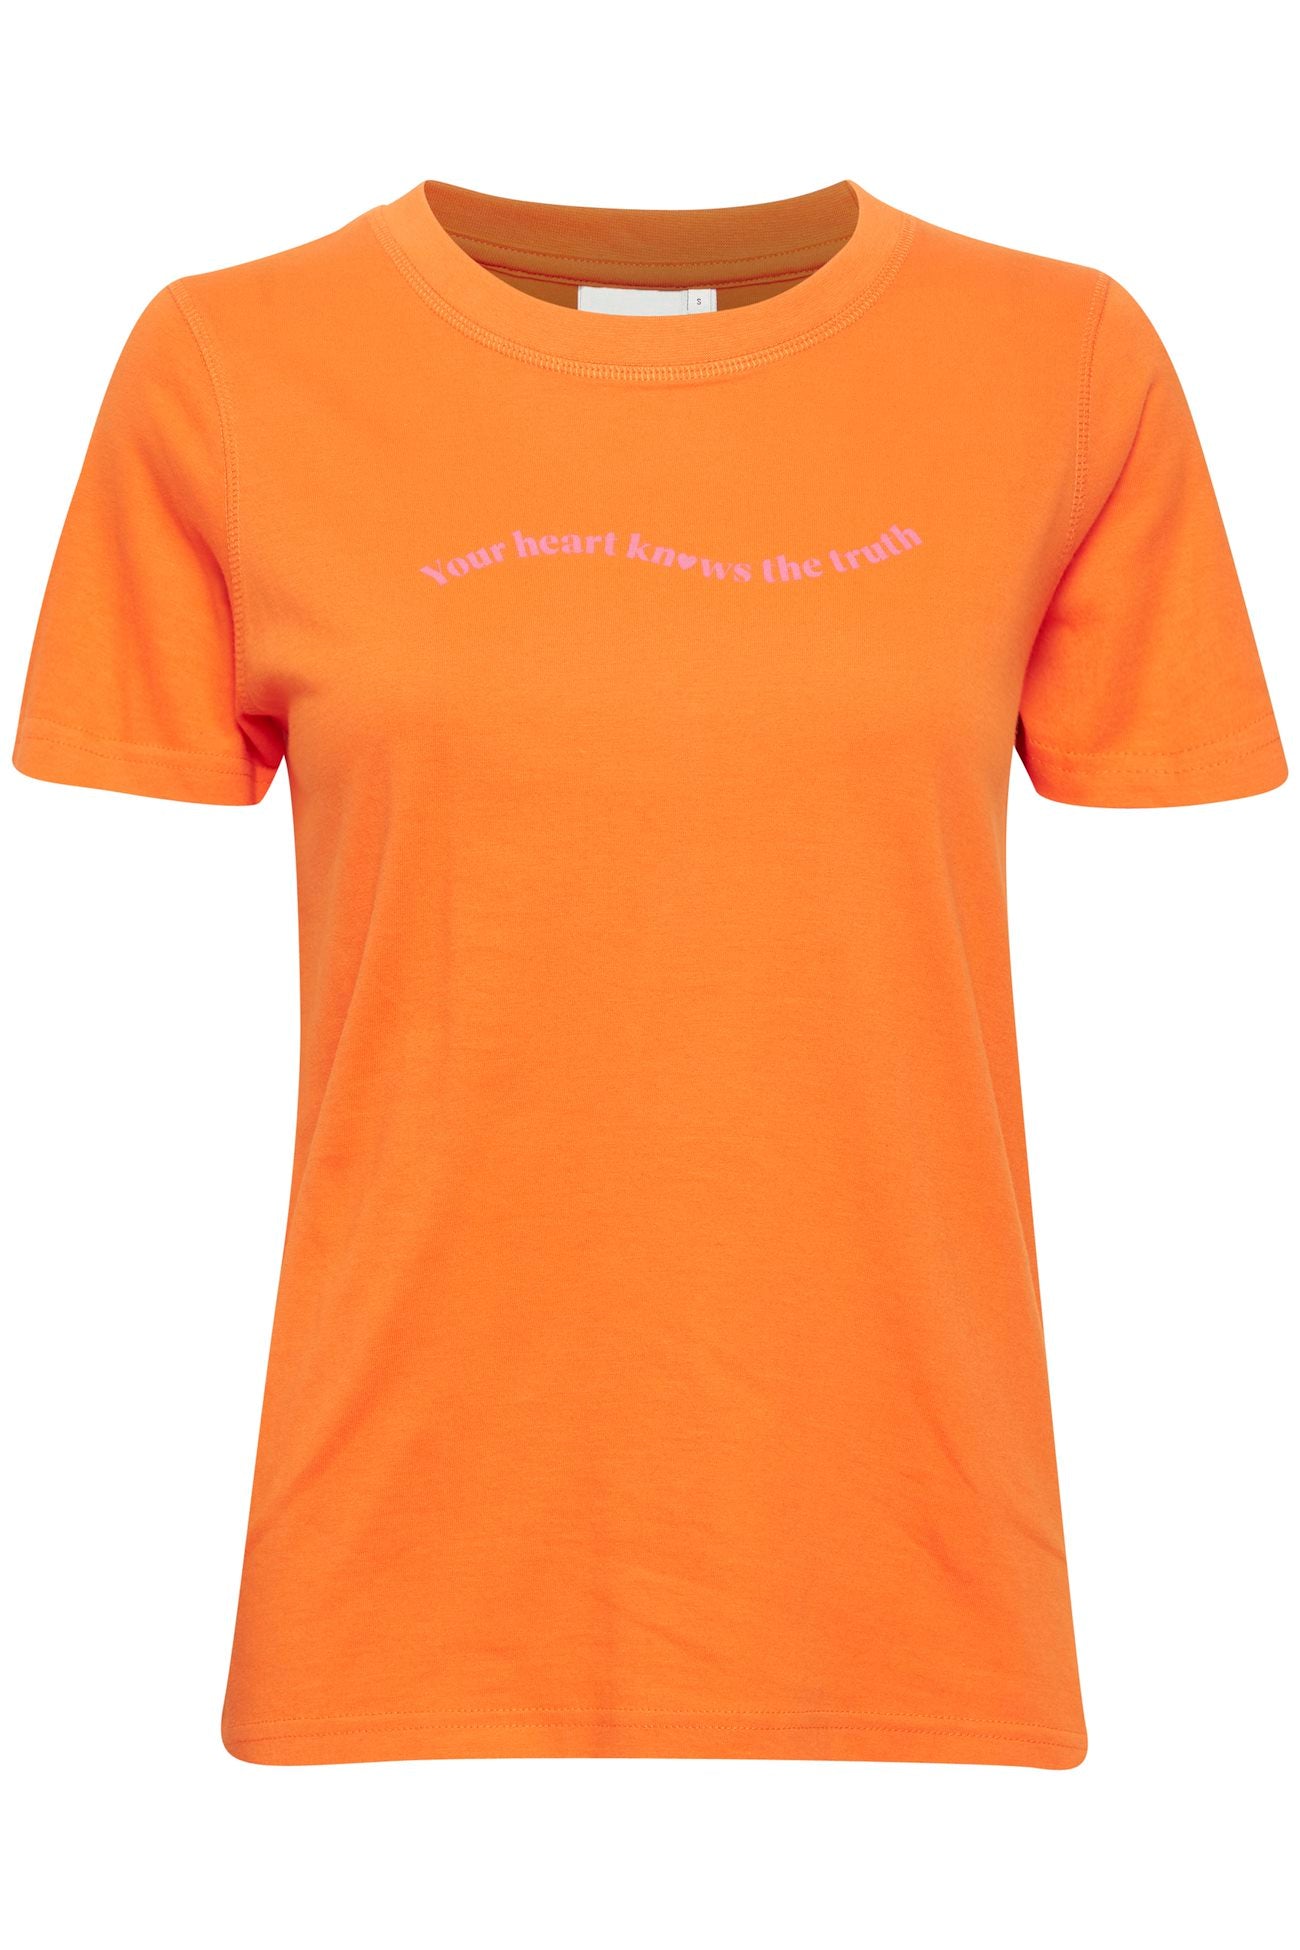 Ichi Ihrunela T Shirt Orange